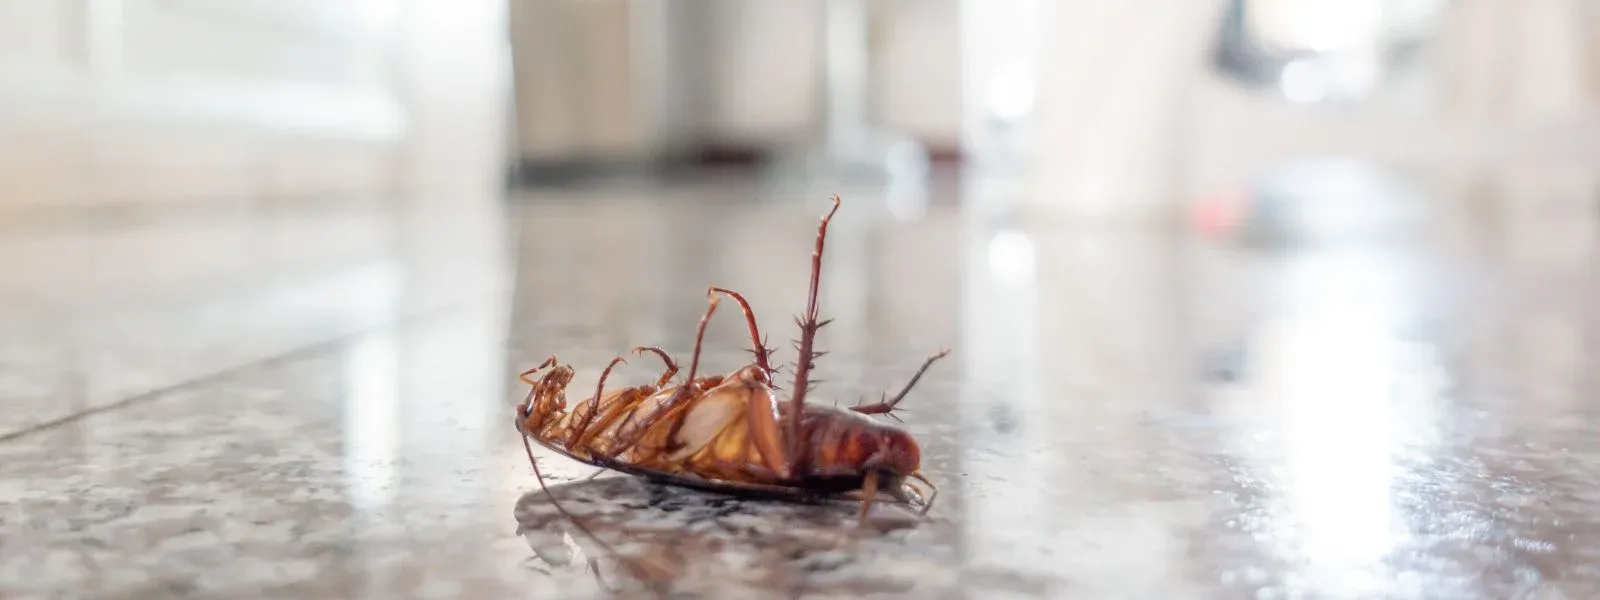 mezi nejčastější brouky v bytě patří šváb